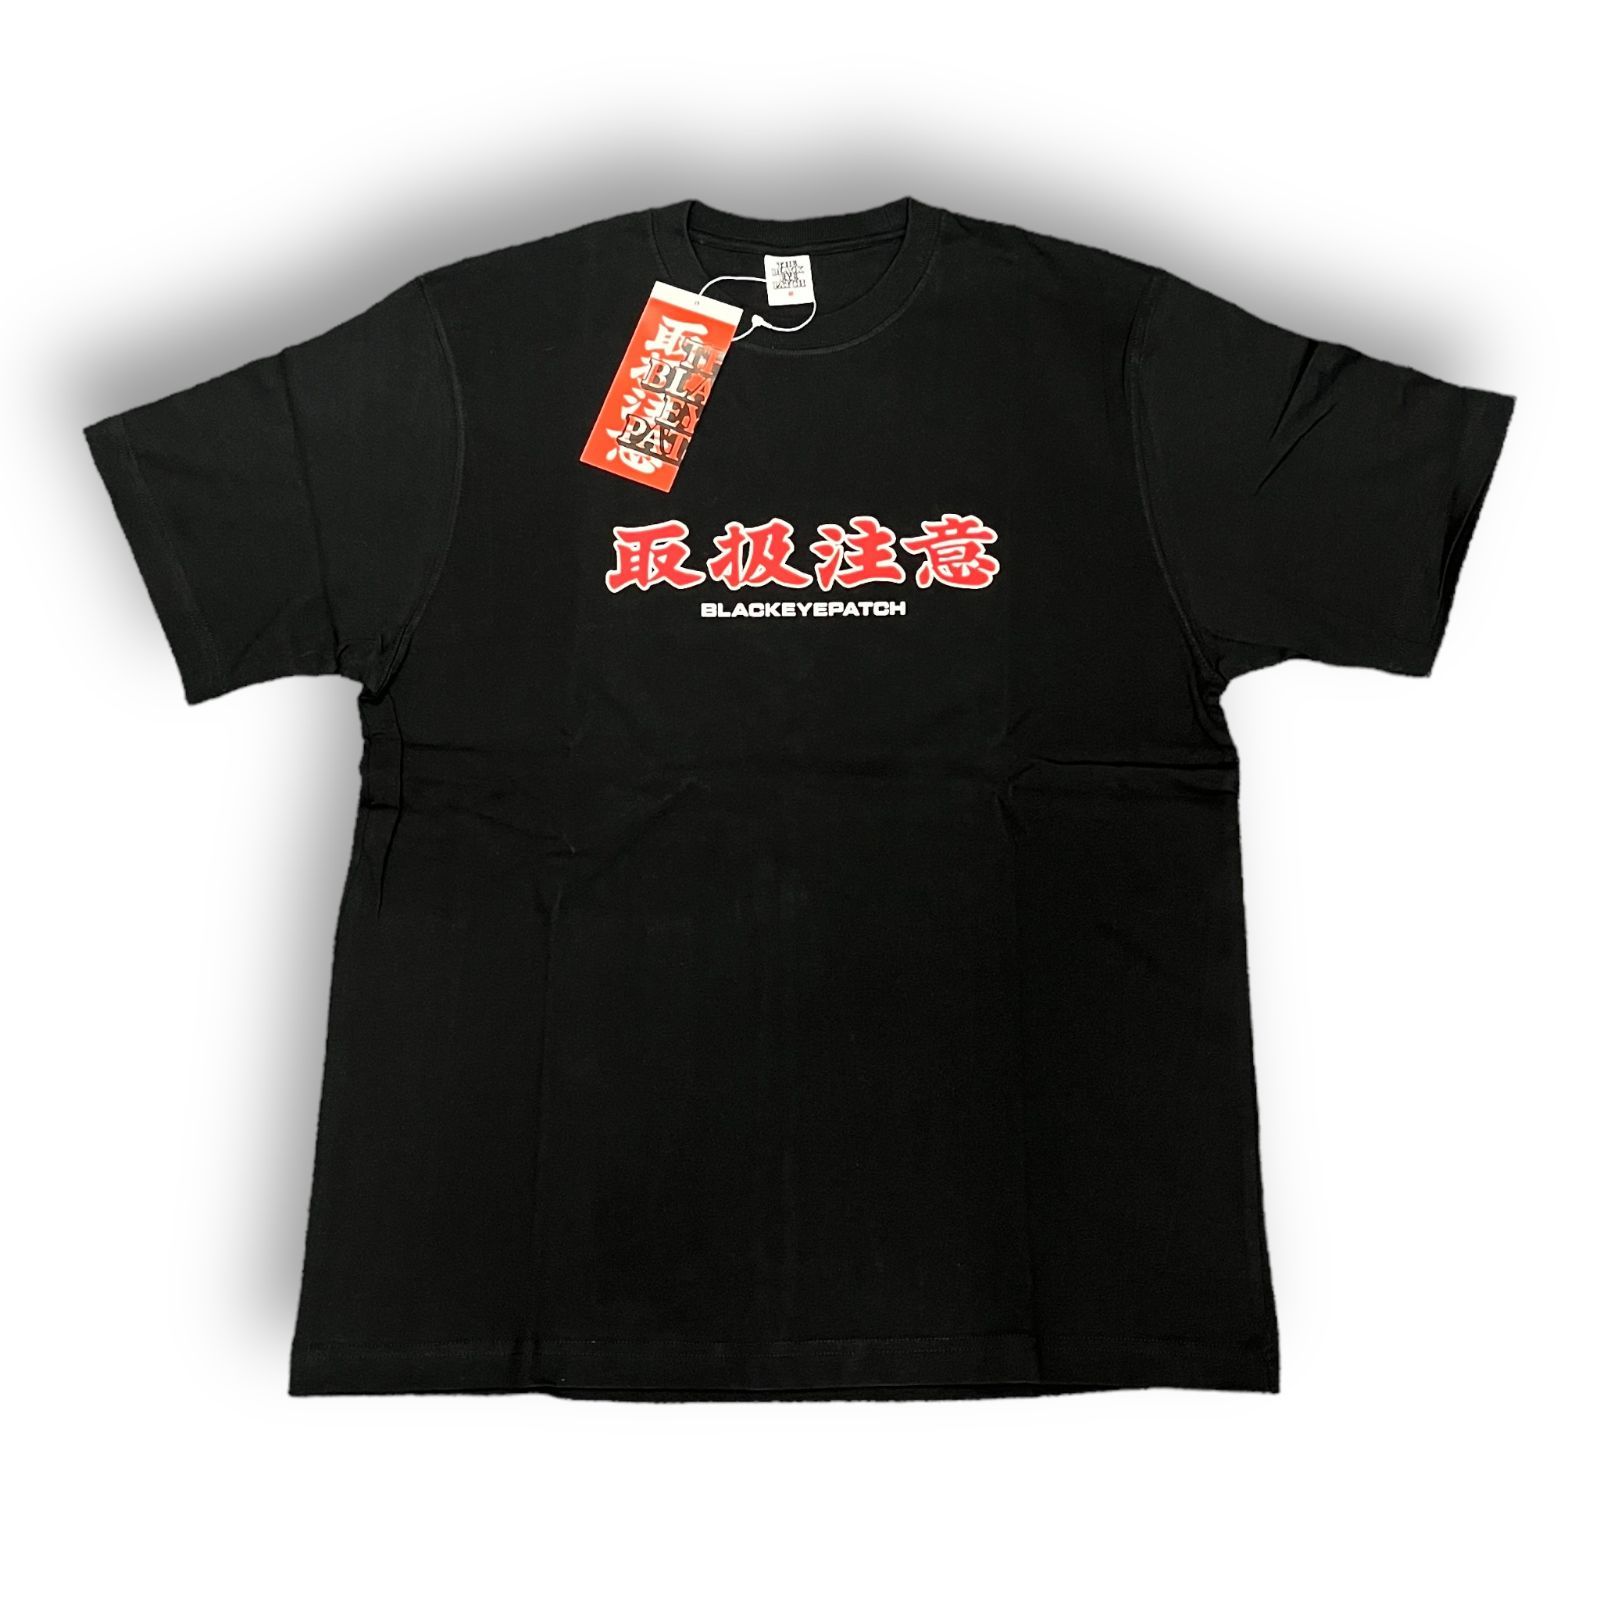 BlackEyePatch 取扱注意 Tシャツ-